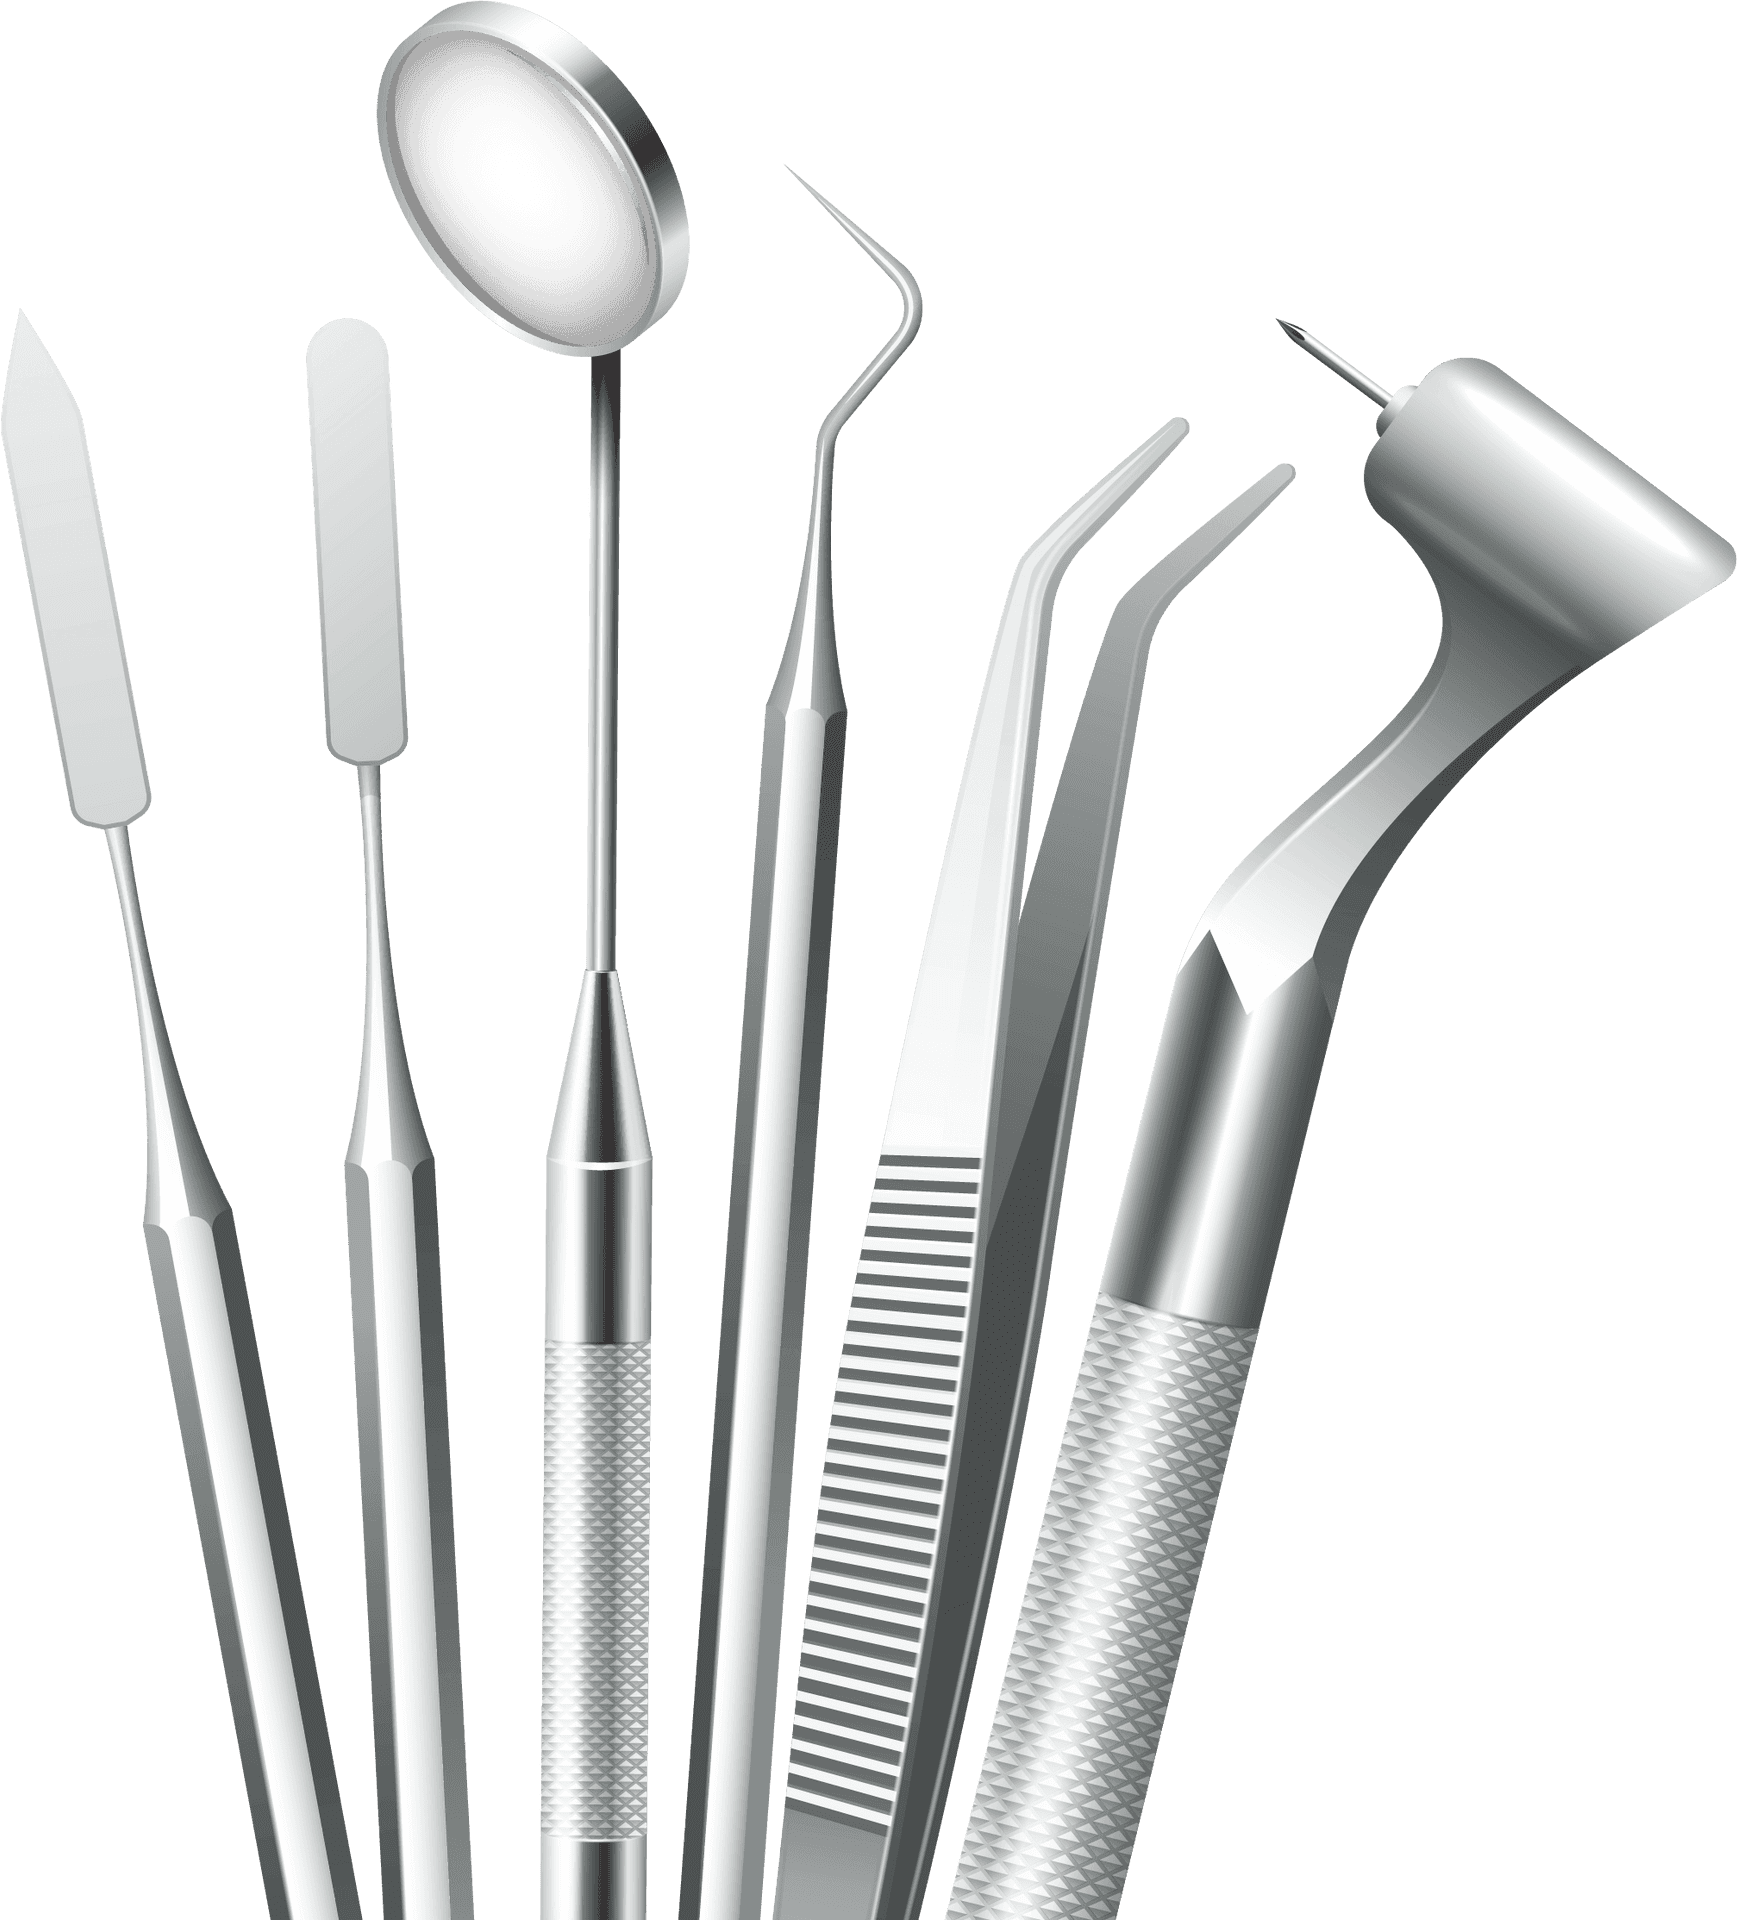 Dental Instruments Set PNG image